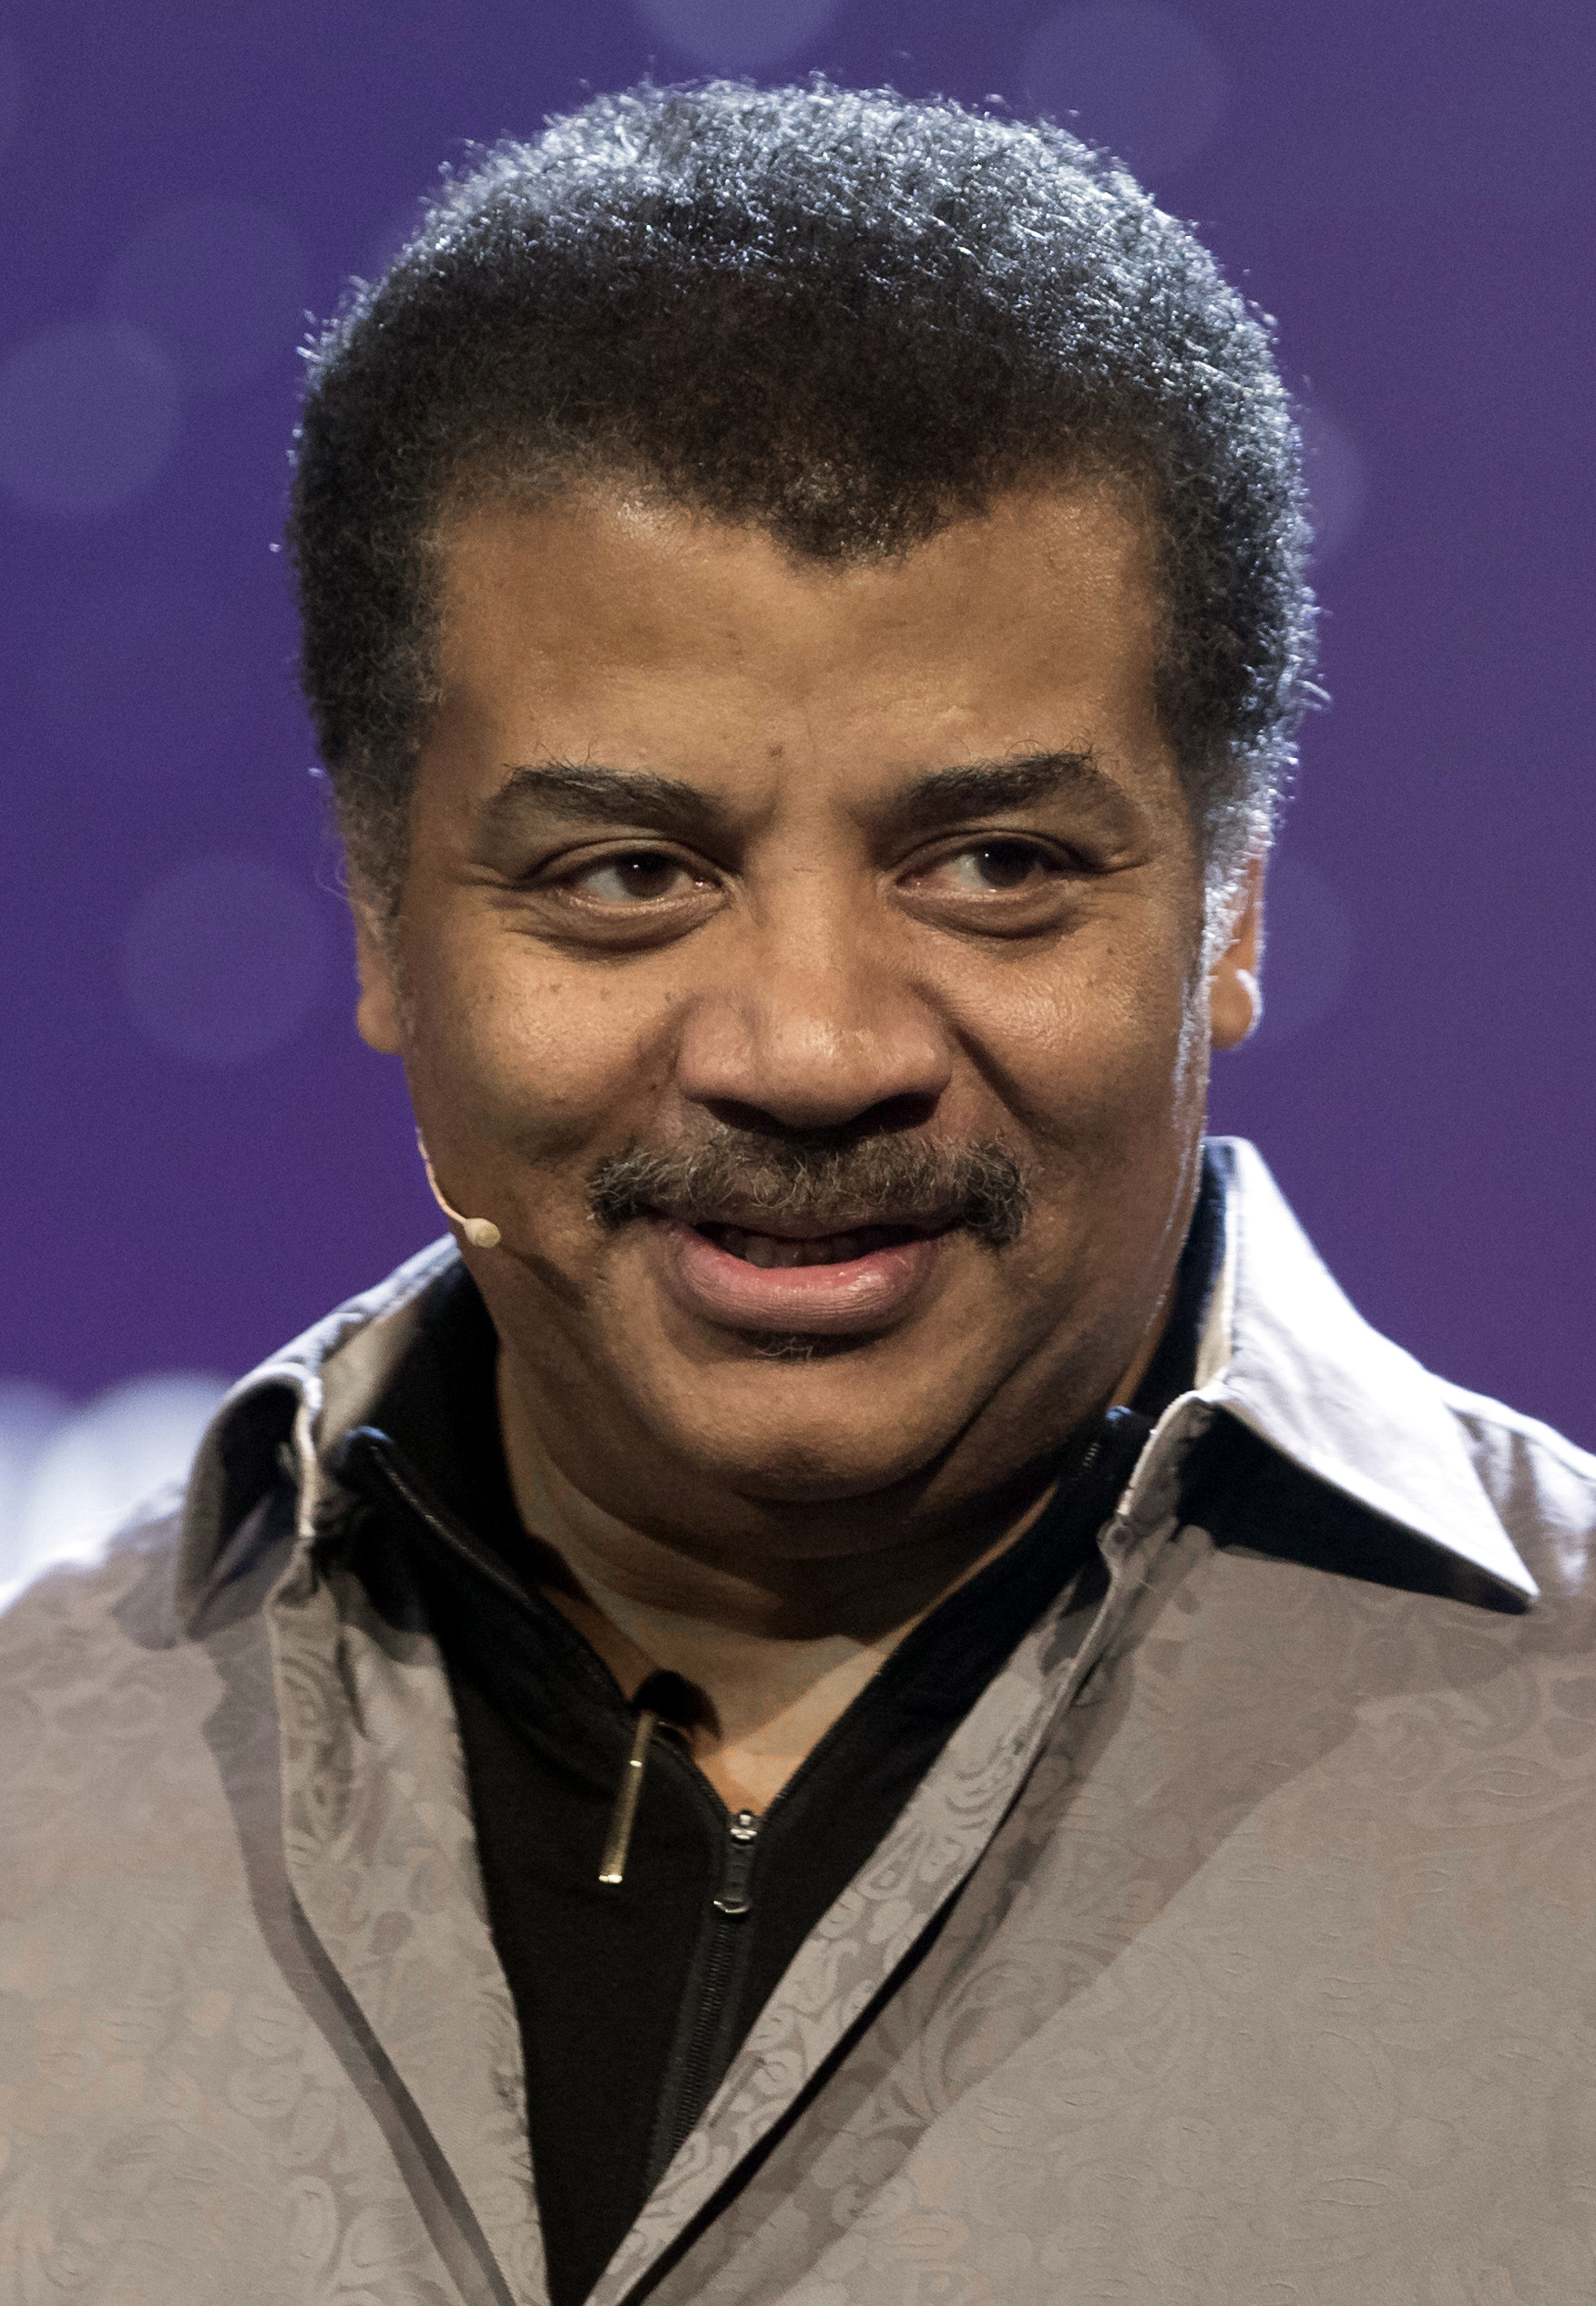 Tyson in 2017